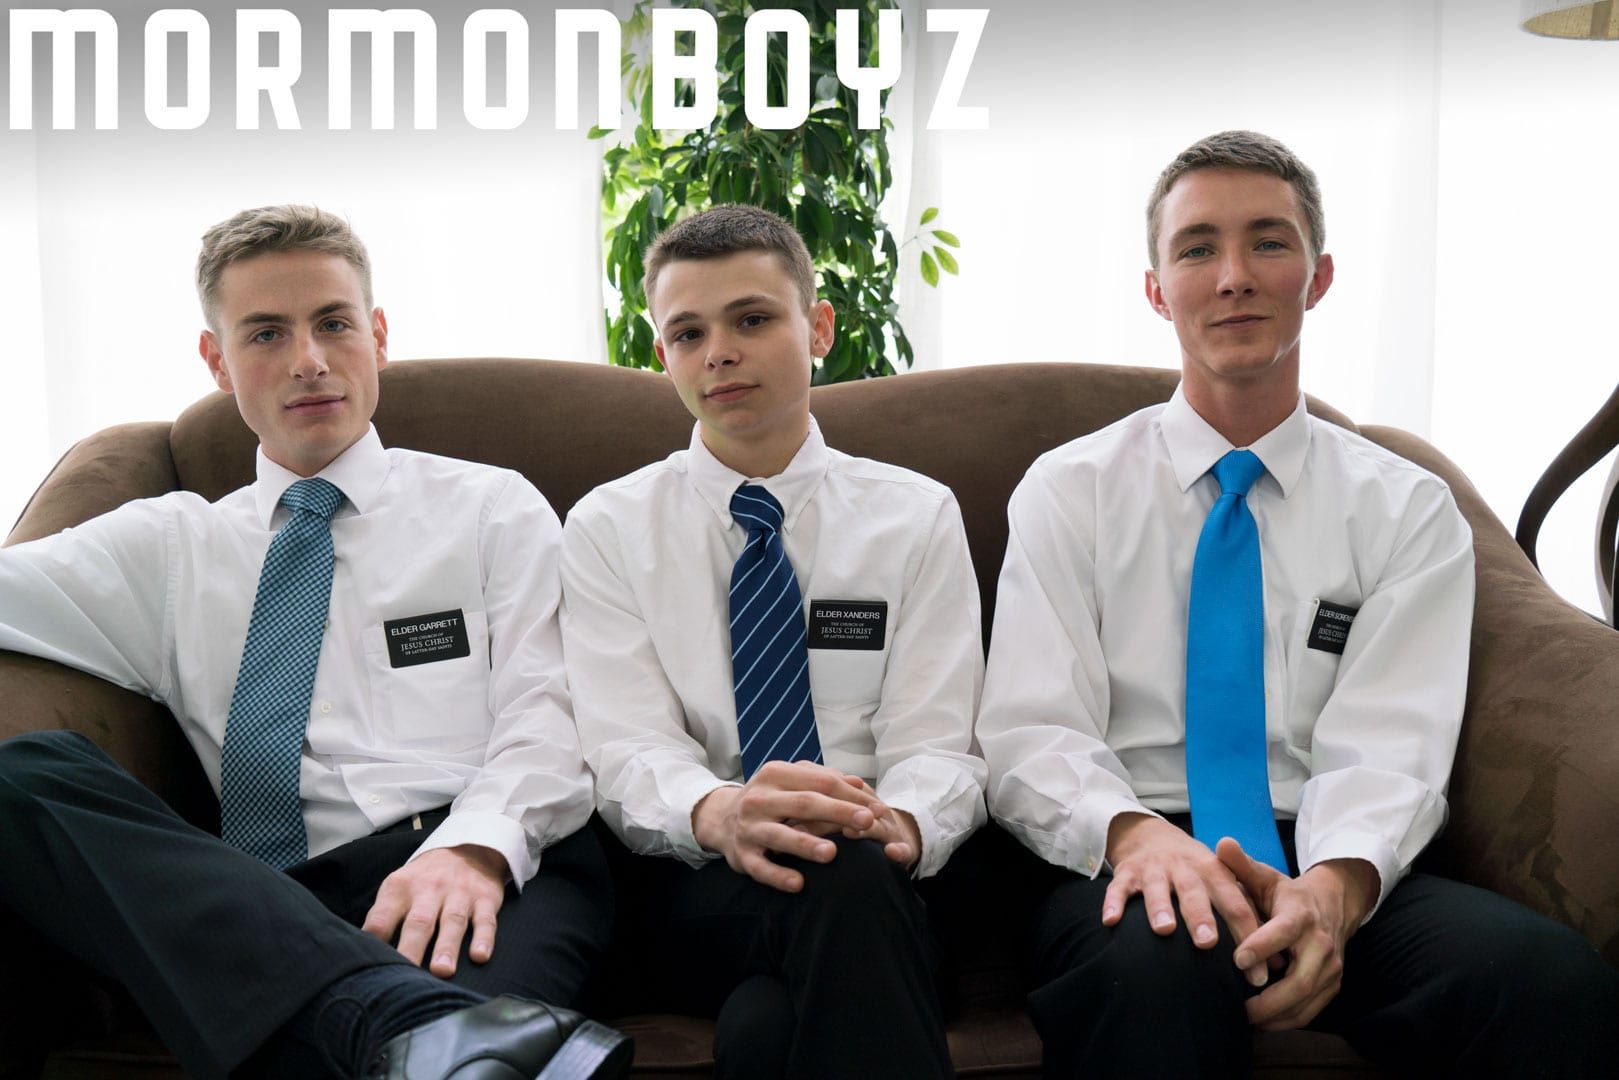 Tumblr Mormonboyz